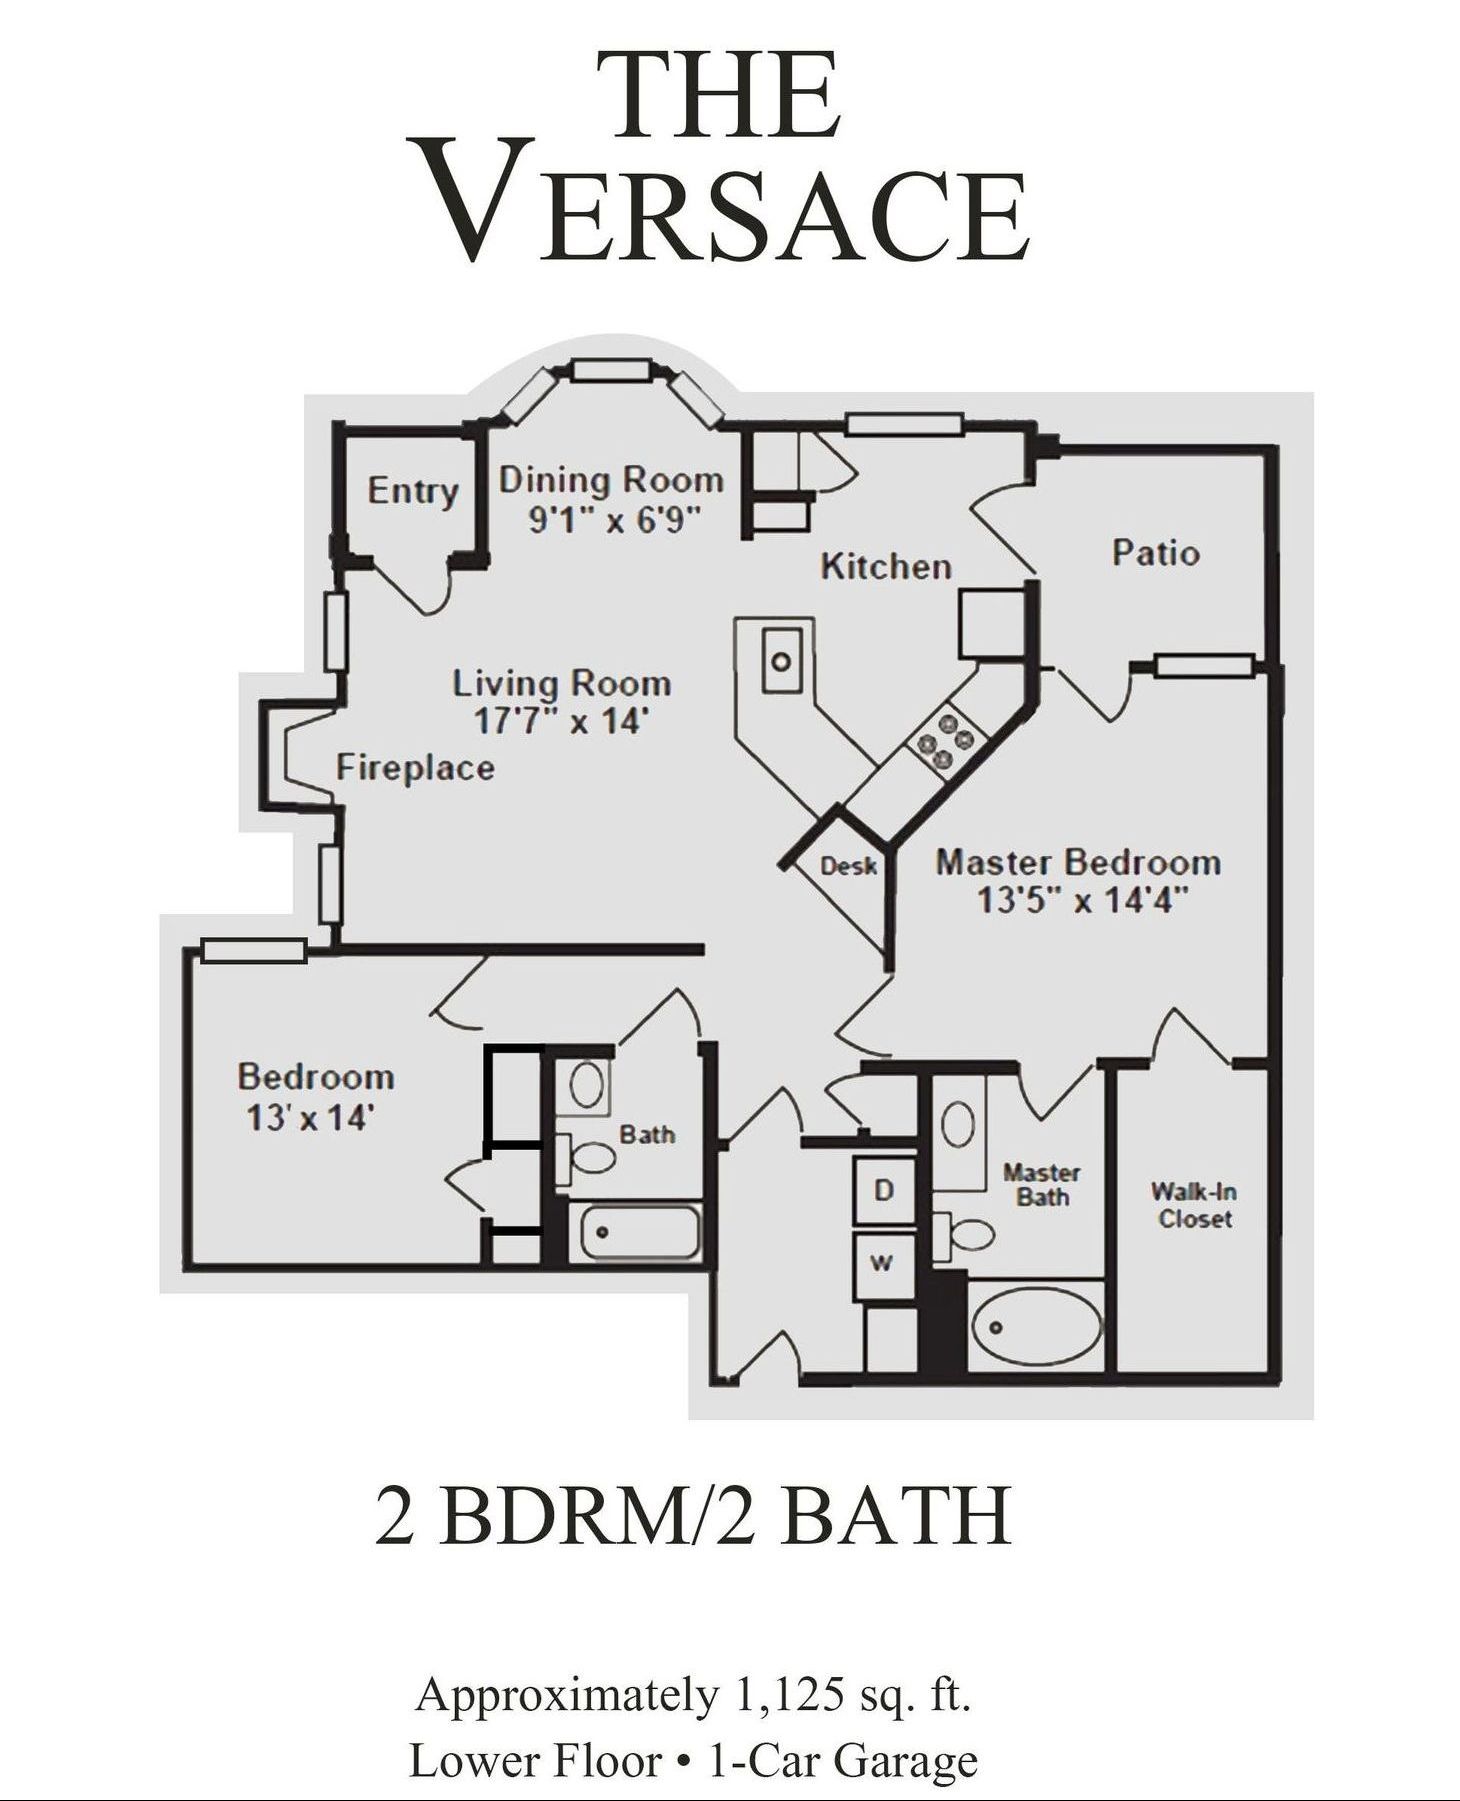 Versace floor plan drawing